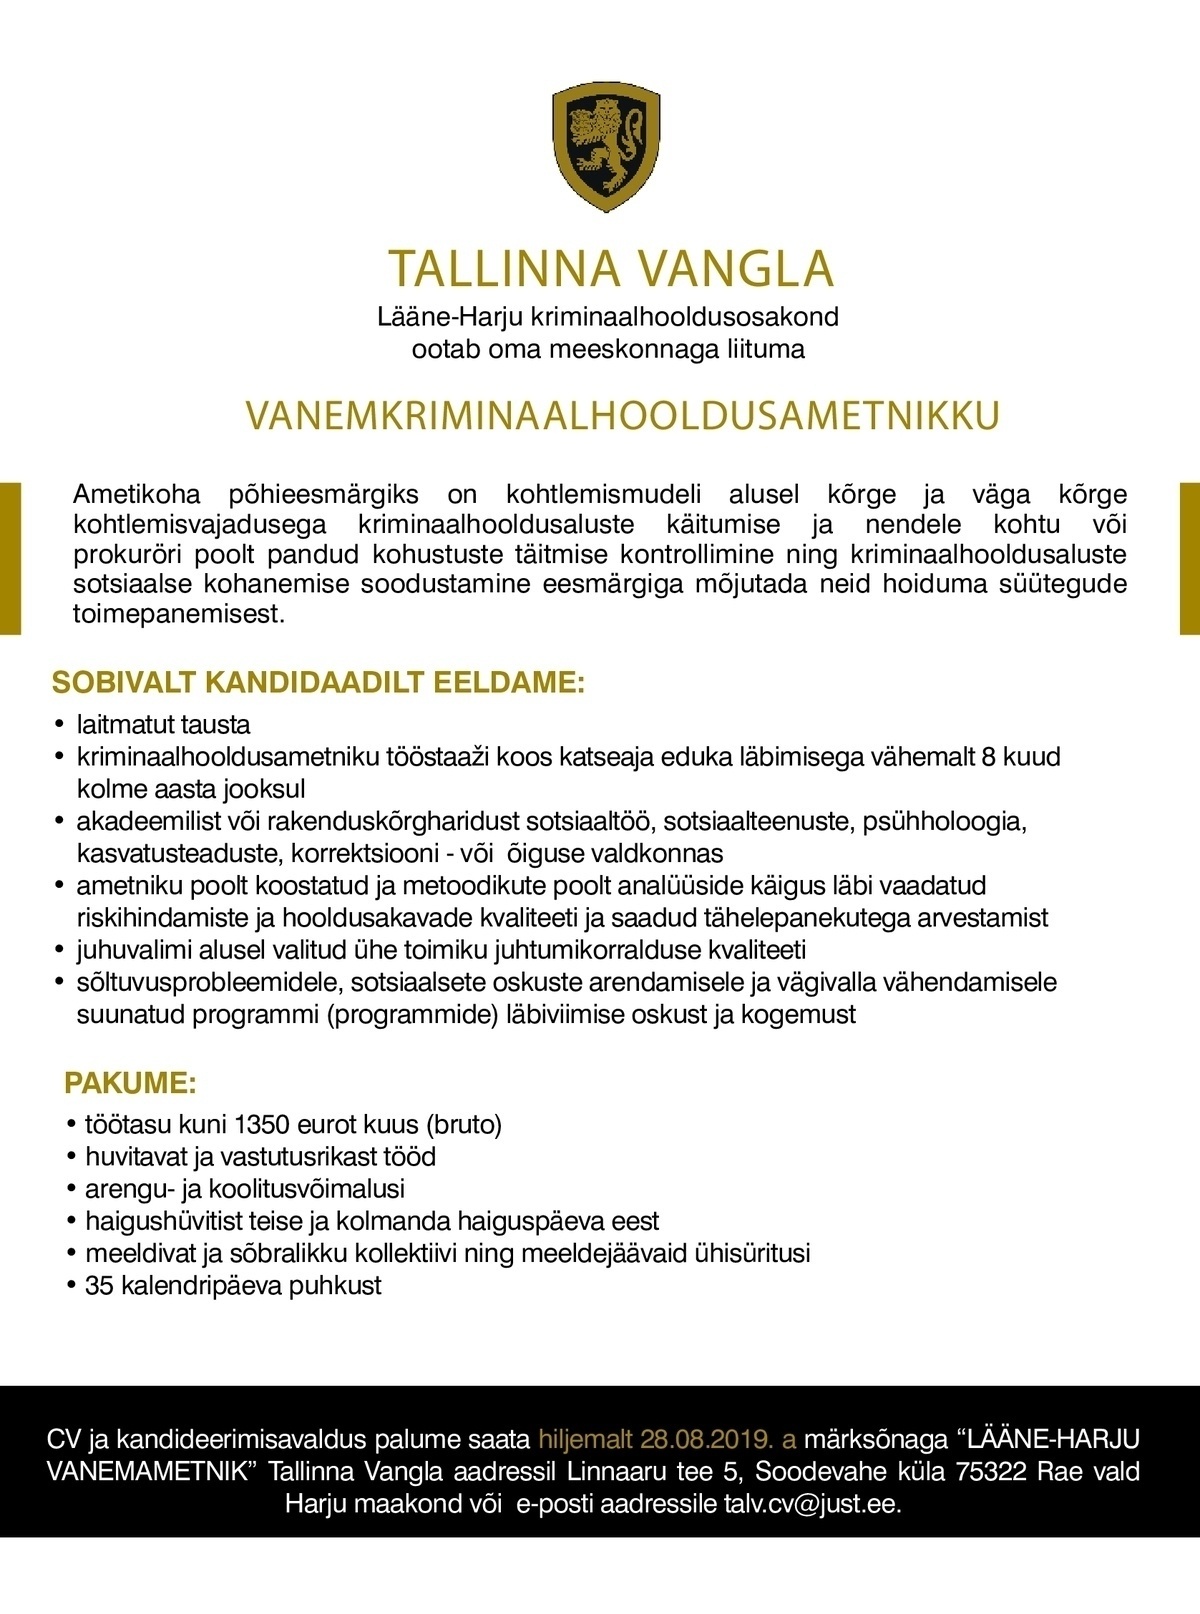 Tallinna Vangla Lääne-Harju Vanemkriminaalhooldusametnik 